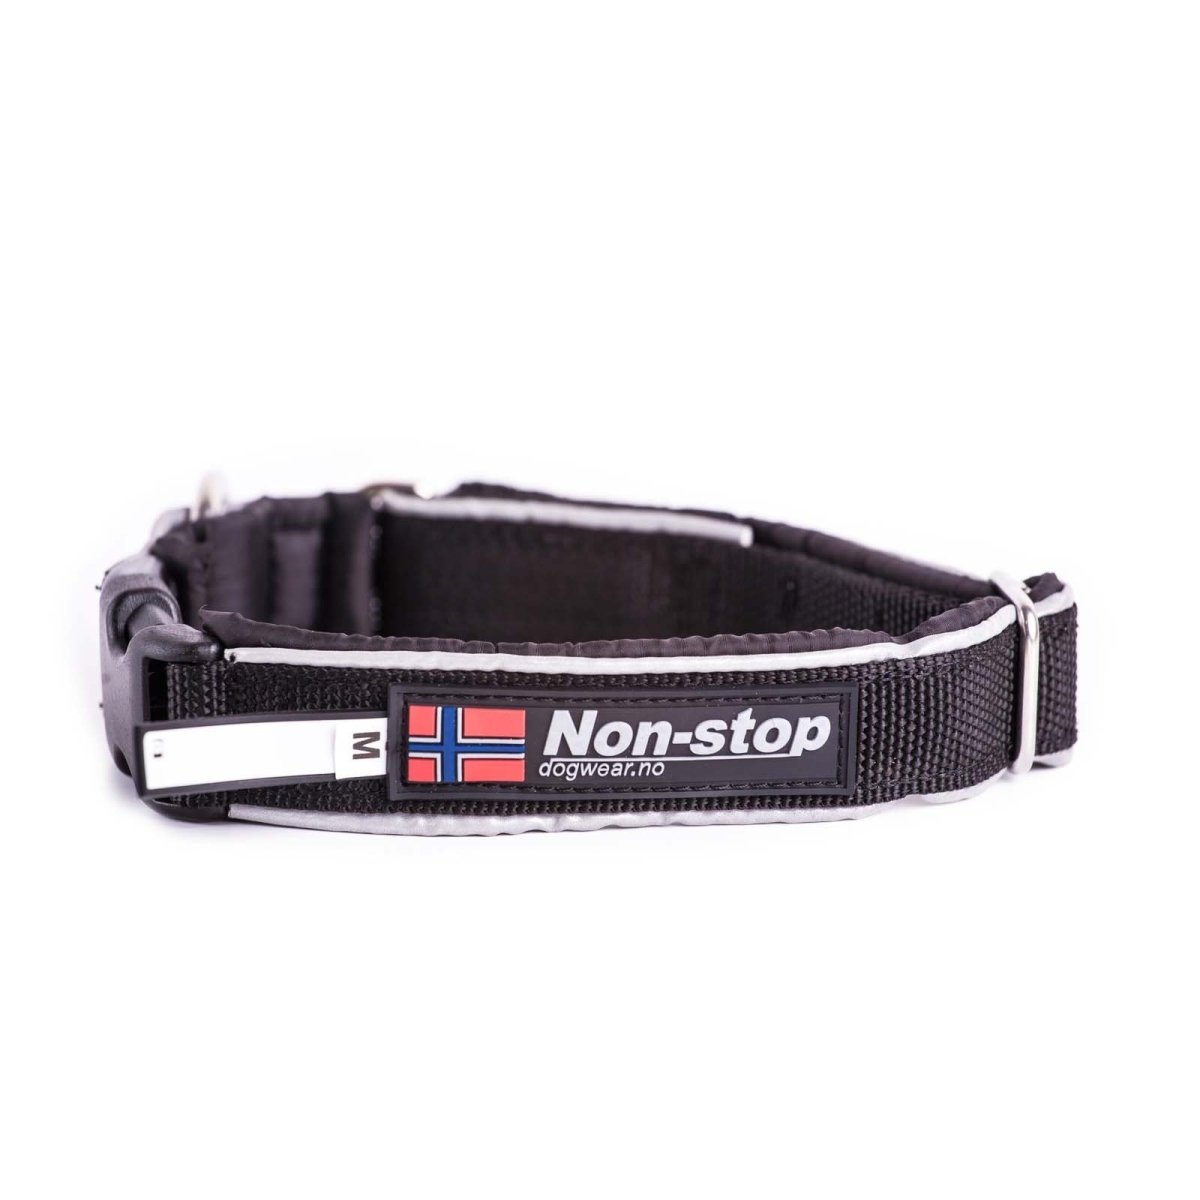 Collar "Polar Click" Non-stop dogwear - Corre Perro Mx